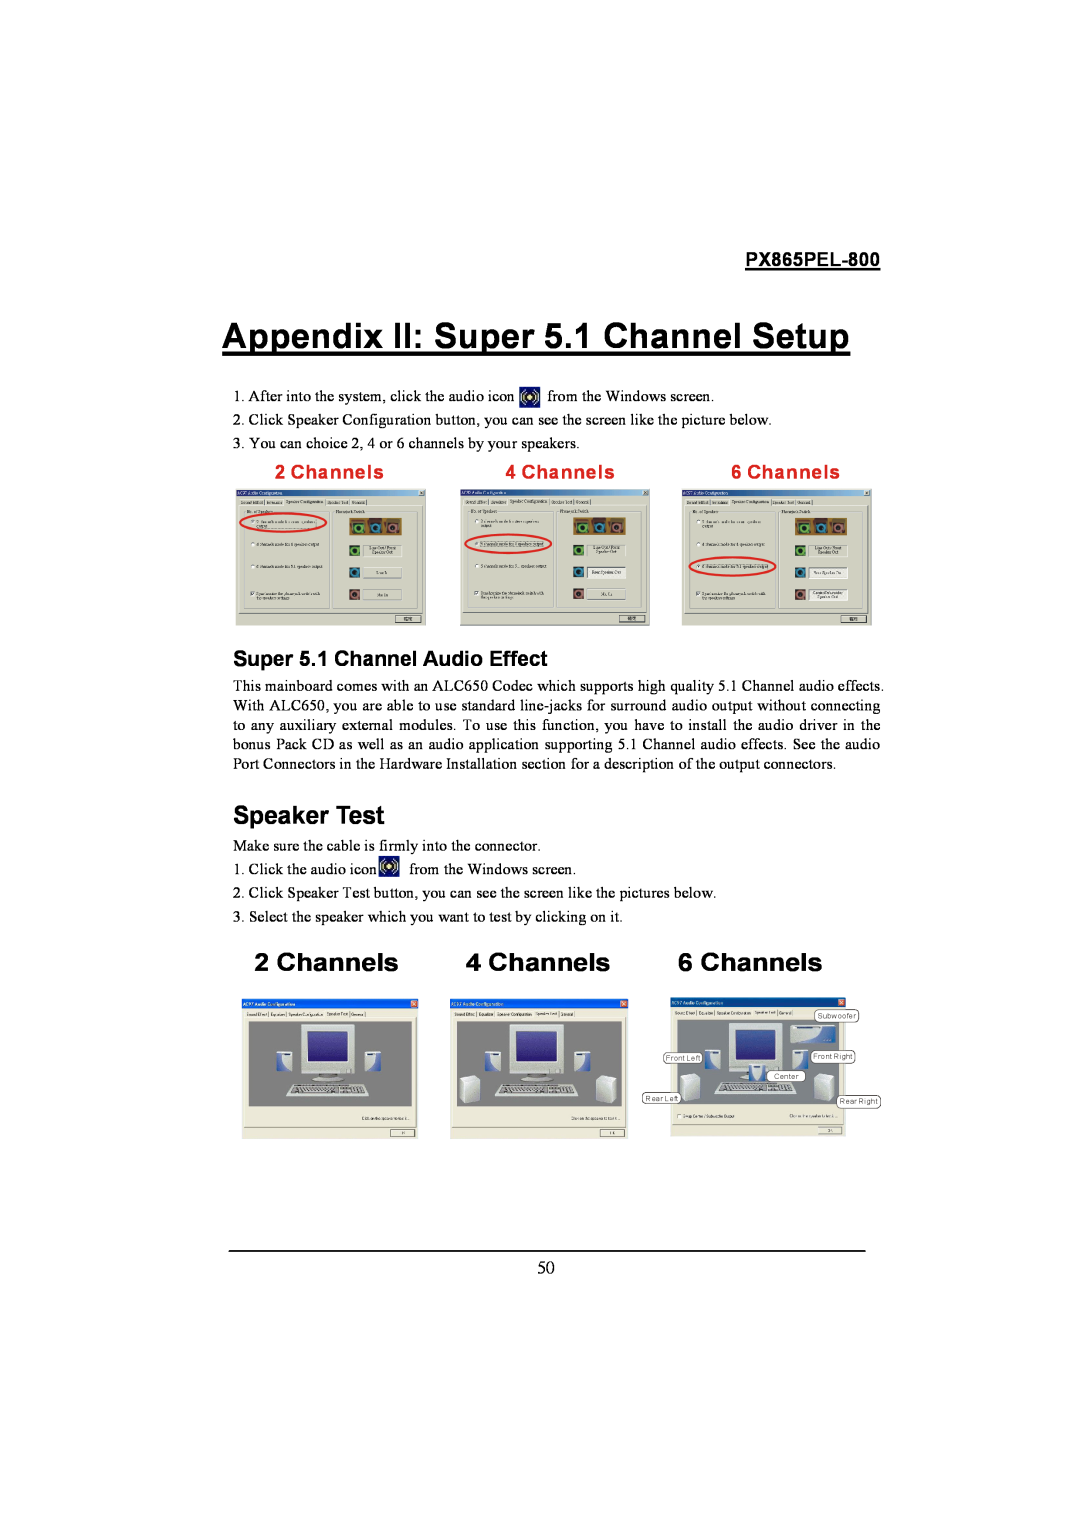 Intel PX865PEL-800 warranty Appendix II Super 5.1 Channel Setup, Speaker Test, Channels 4 Channels 6 Channels 